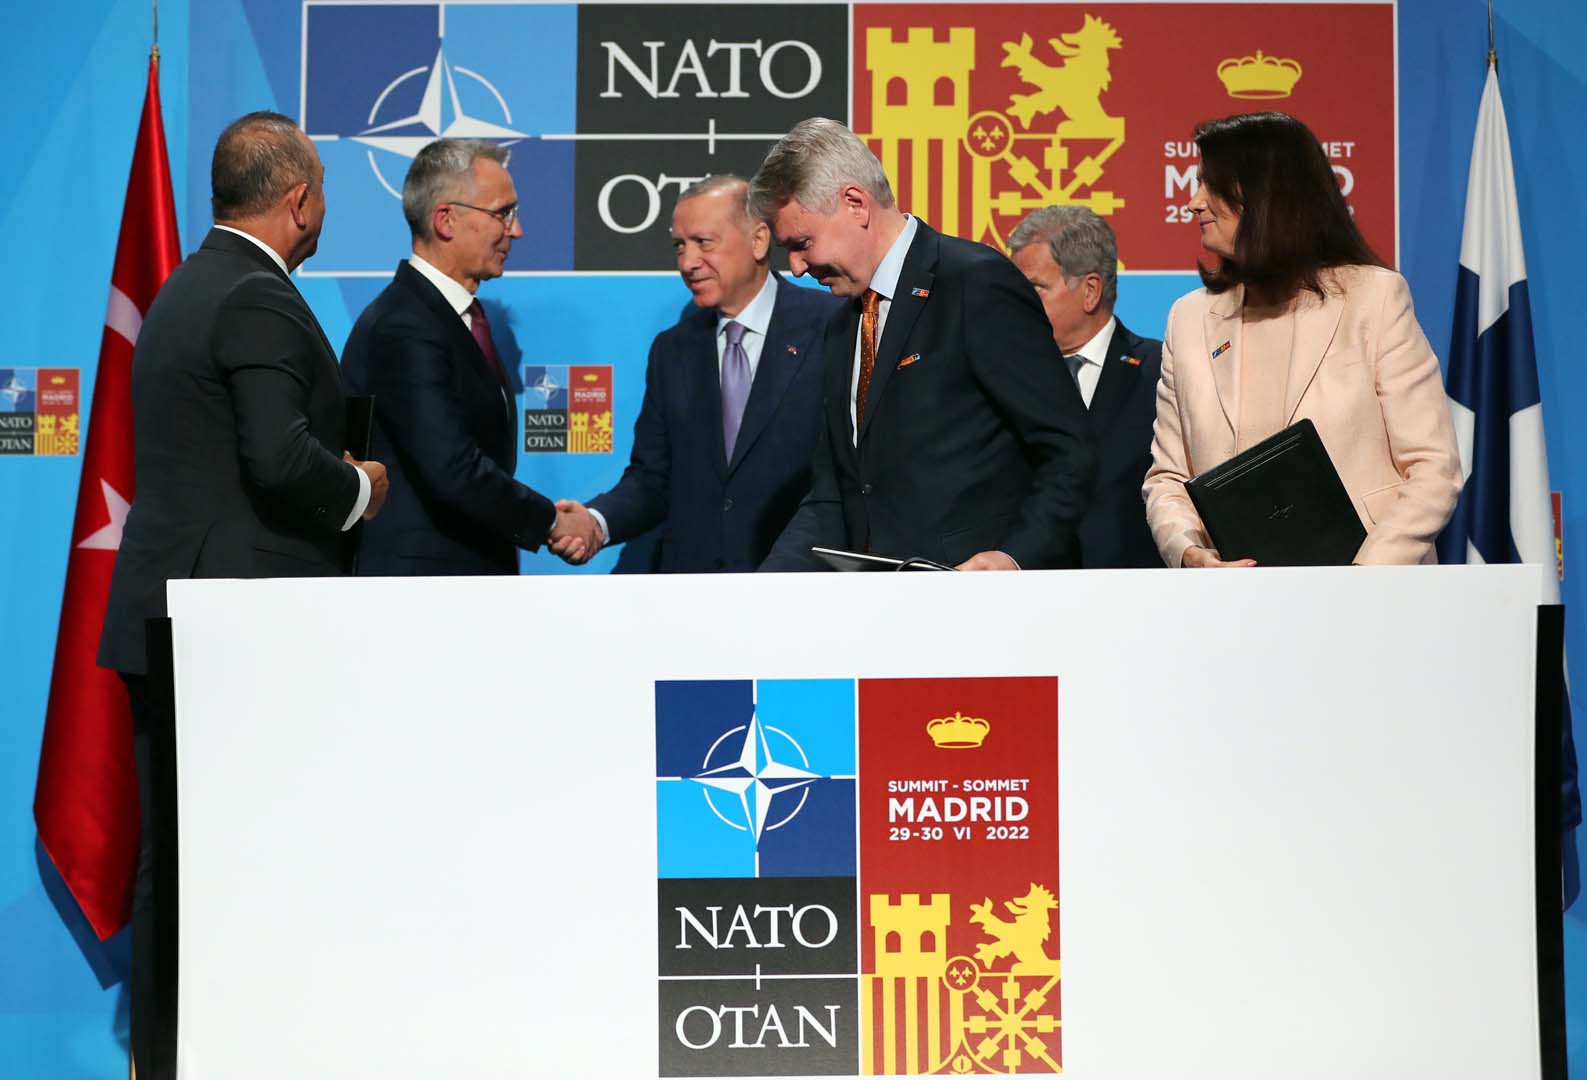 NATO görüşmelerinde mutabakata varıldı! 3 ülke arasında ortak bildiri yayınlandı!